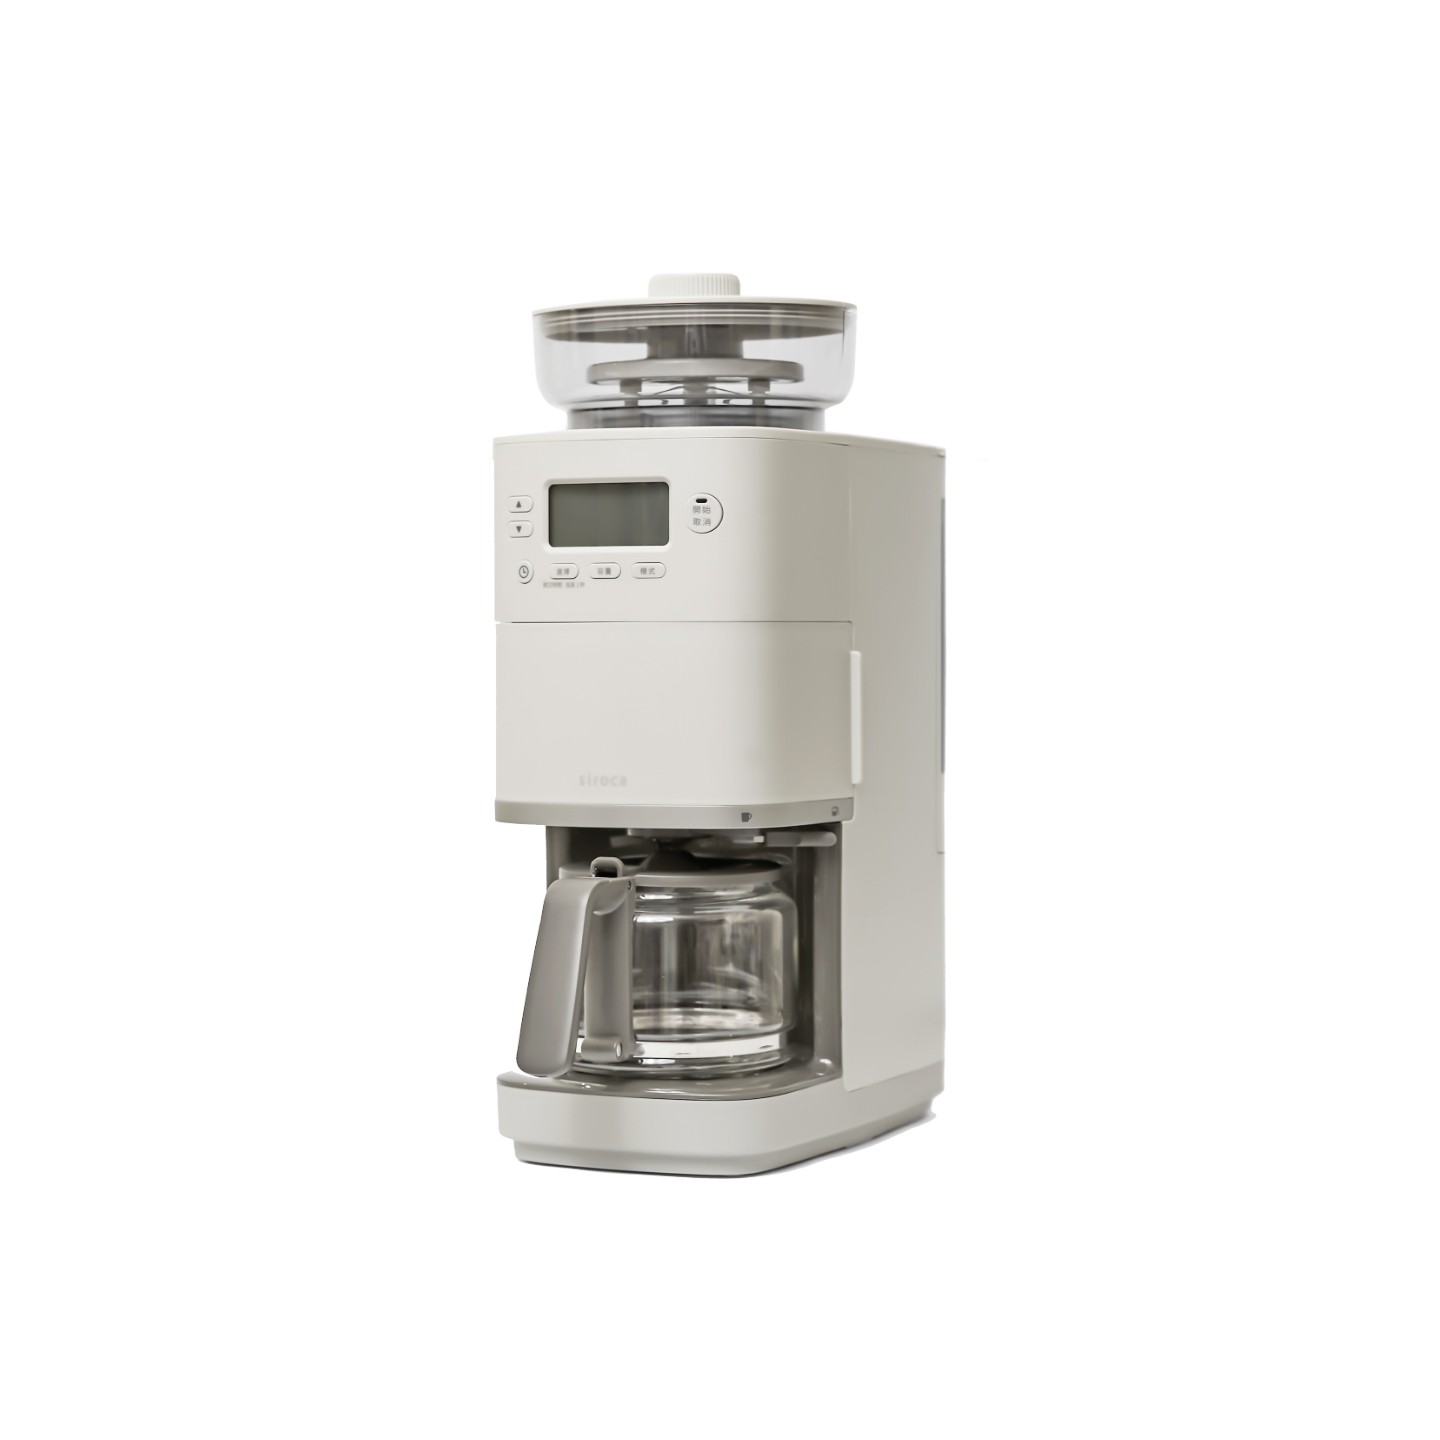 【新品上市】SC-C2510 全自動石臼式研磨咖啡機 淺灰色送專用濾網